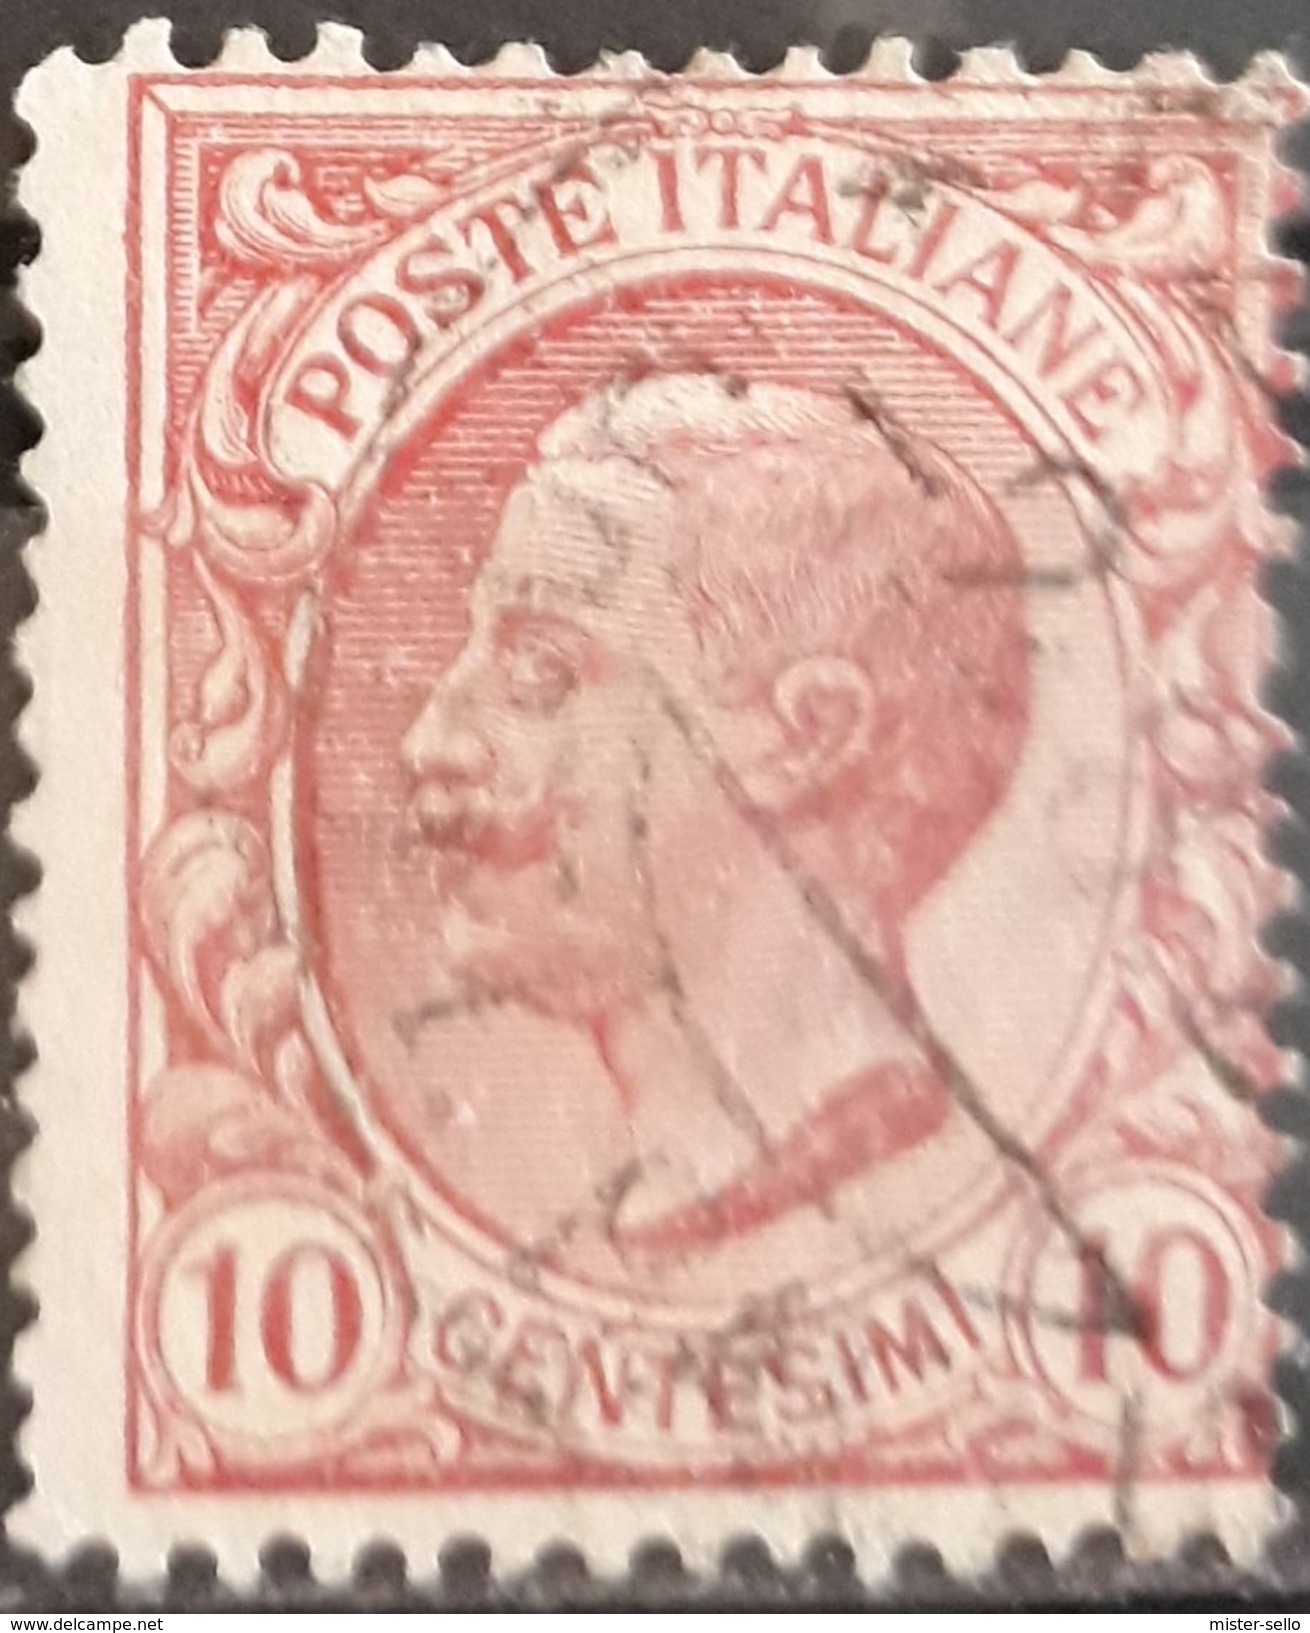 ITALIA 1906 King Victor Emmanuel III. USADO - USED. - Used